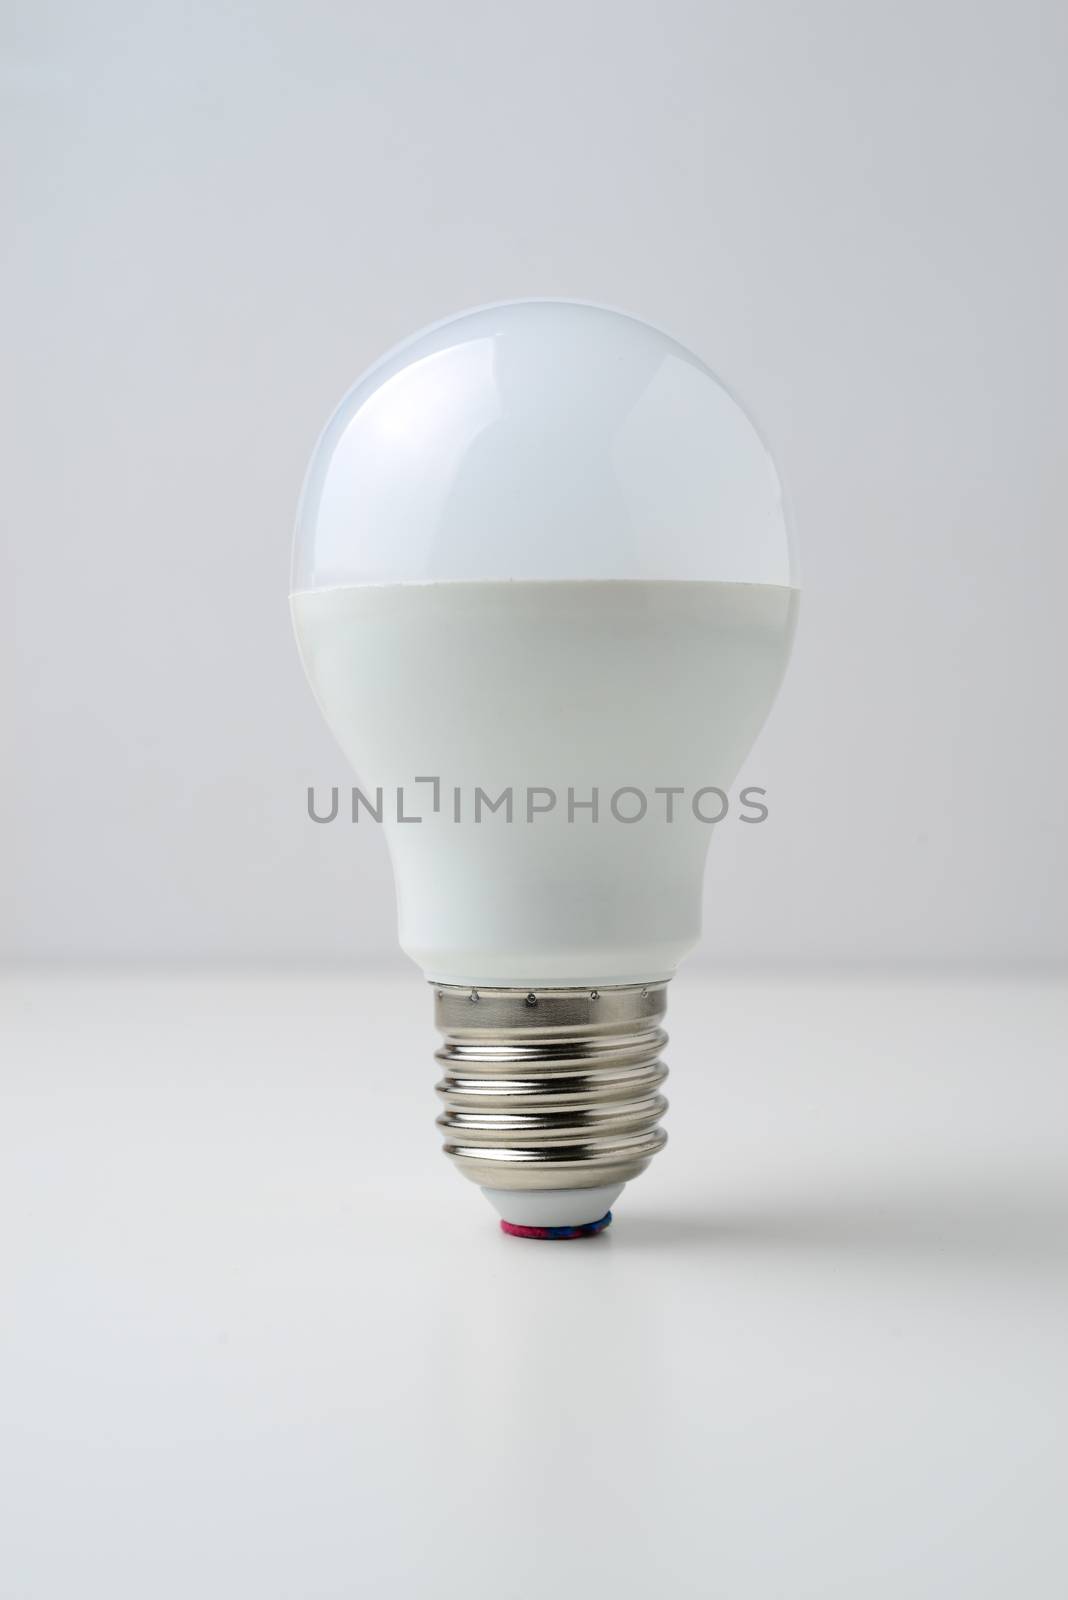 LED lights bulb